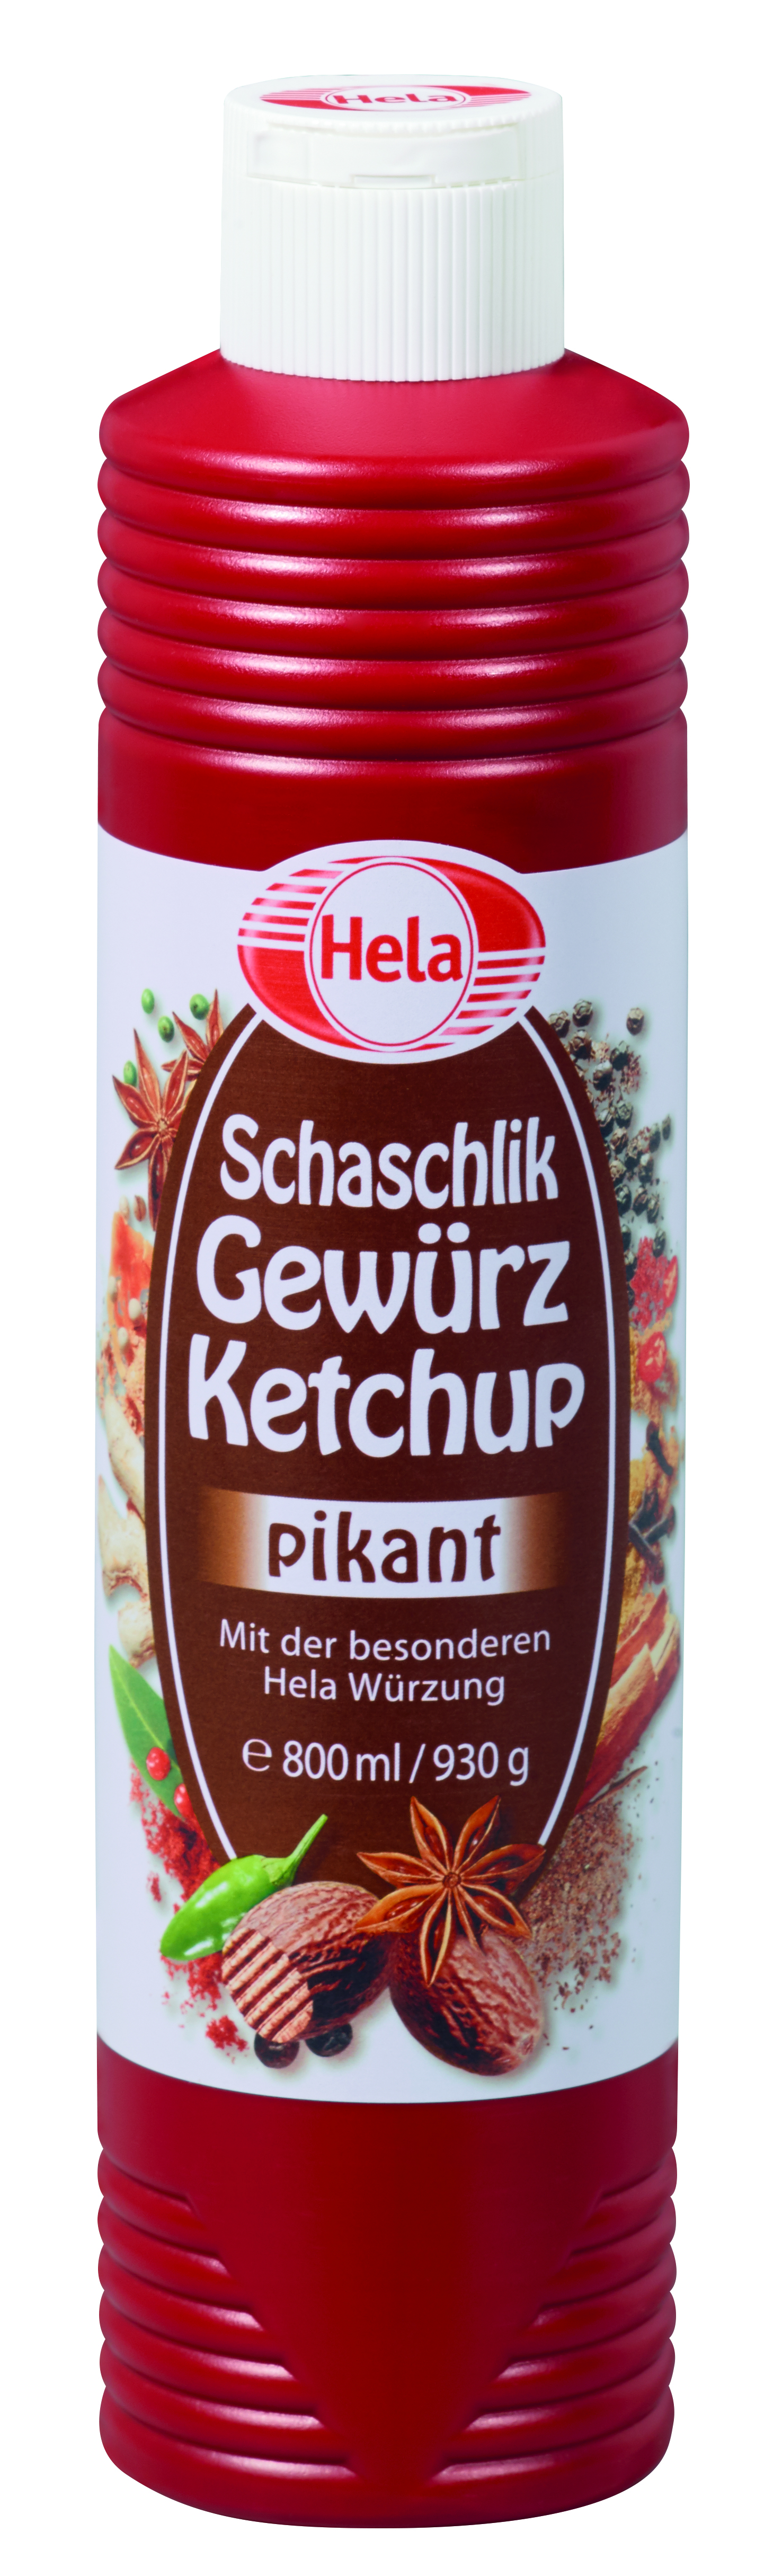 Hela, Schaschlik, Gewürz, Ketchup, pikant, 800ml, Flasche